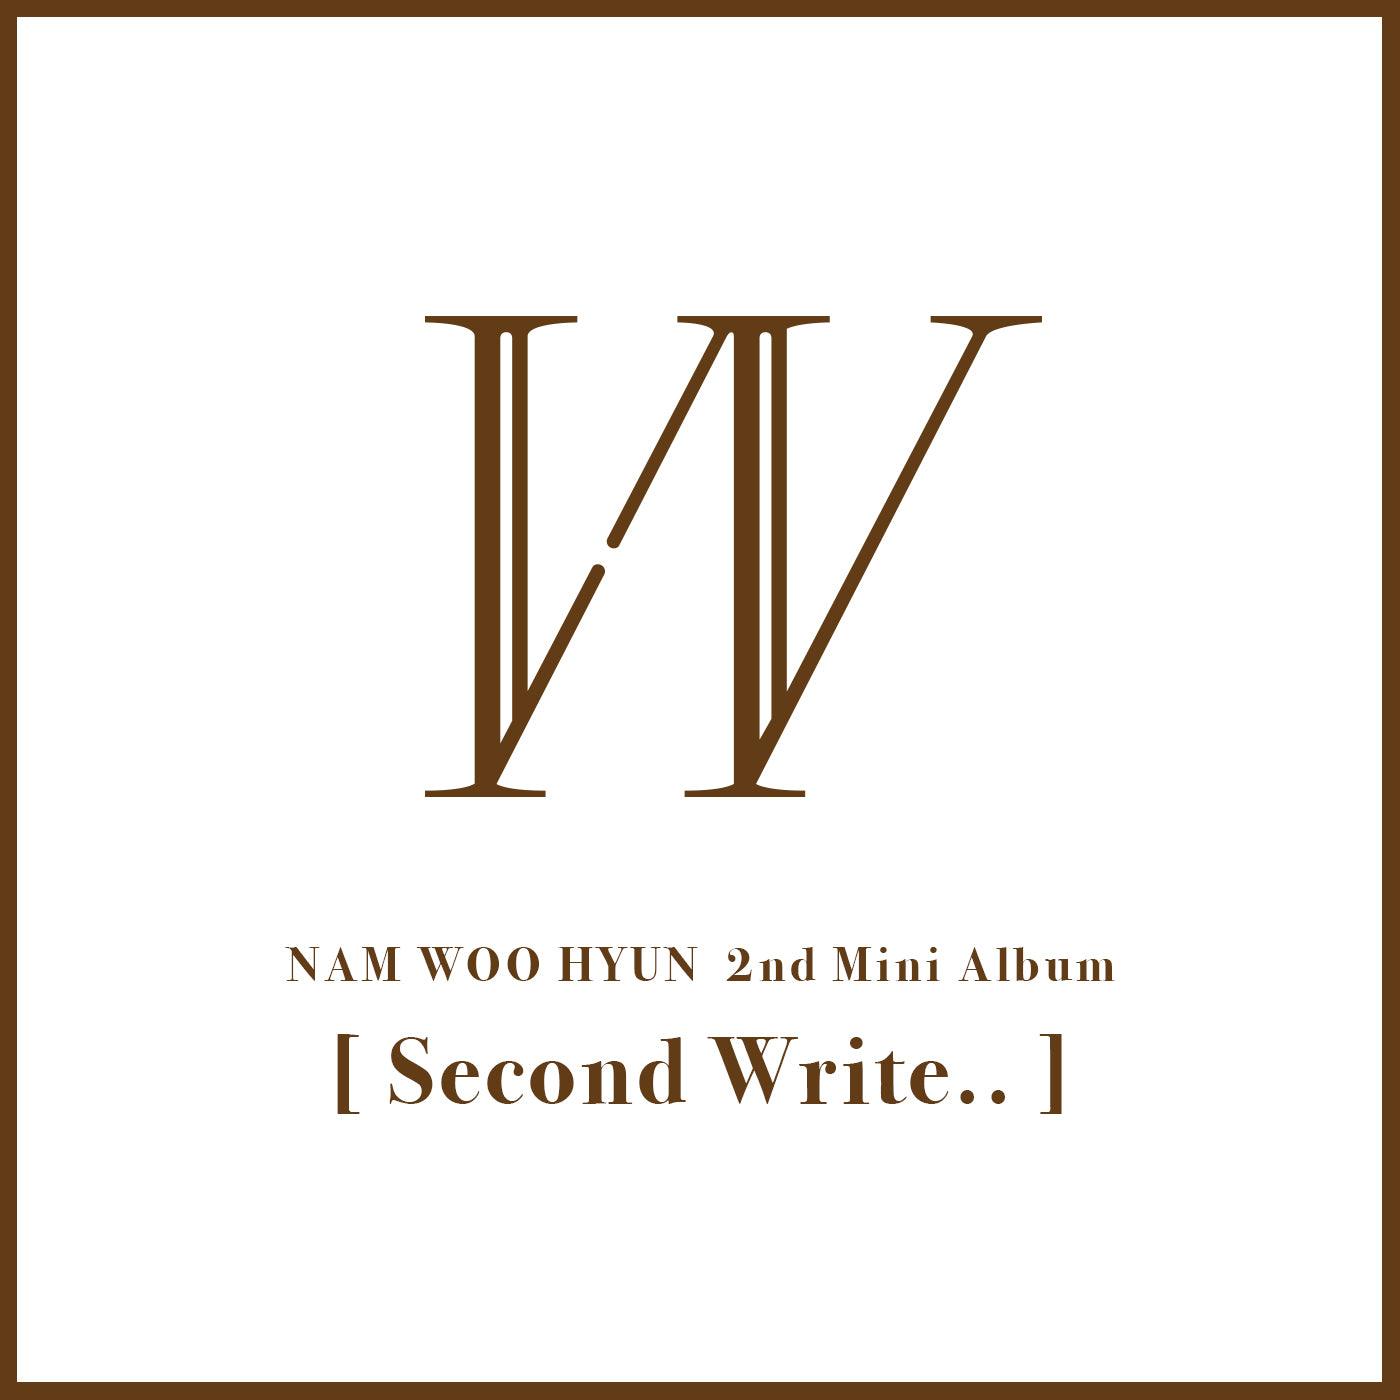 NAM WOO HYUN (INFINITE) 2ND MINI ALBUM 'SECOND WRITE..' + POSTER